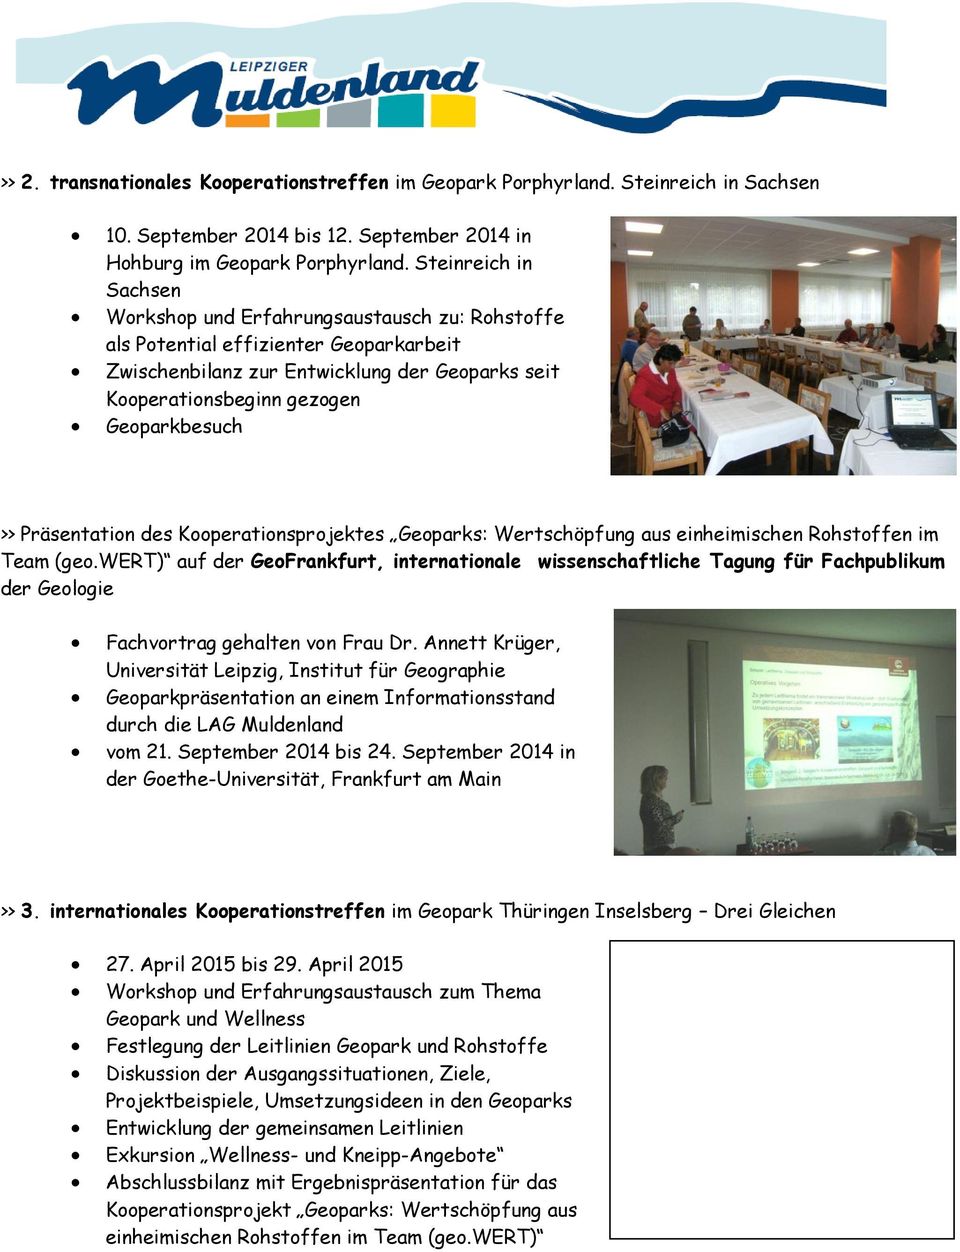 >> Präsentation des Kooperationsprojektes Geoparks: Wertschöpfung aus einheimischen Rohstoffen im Team (geo.